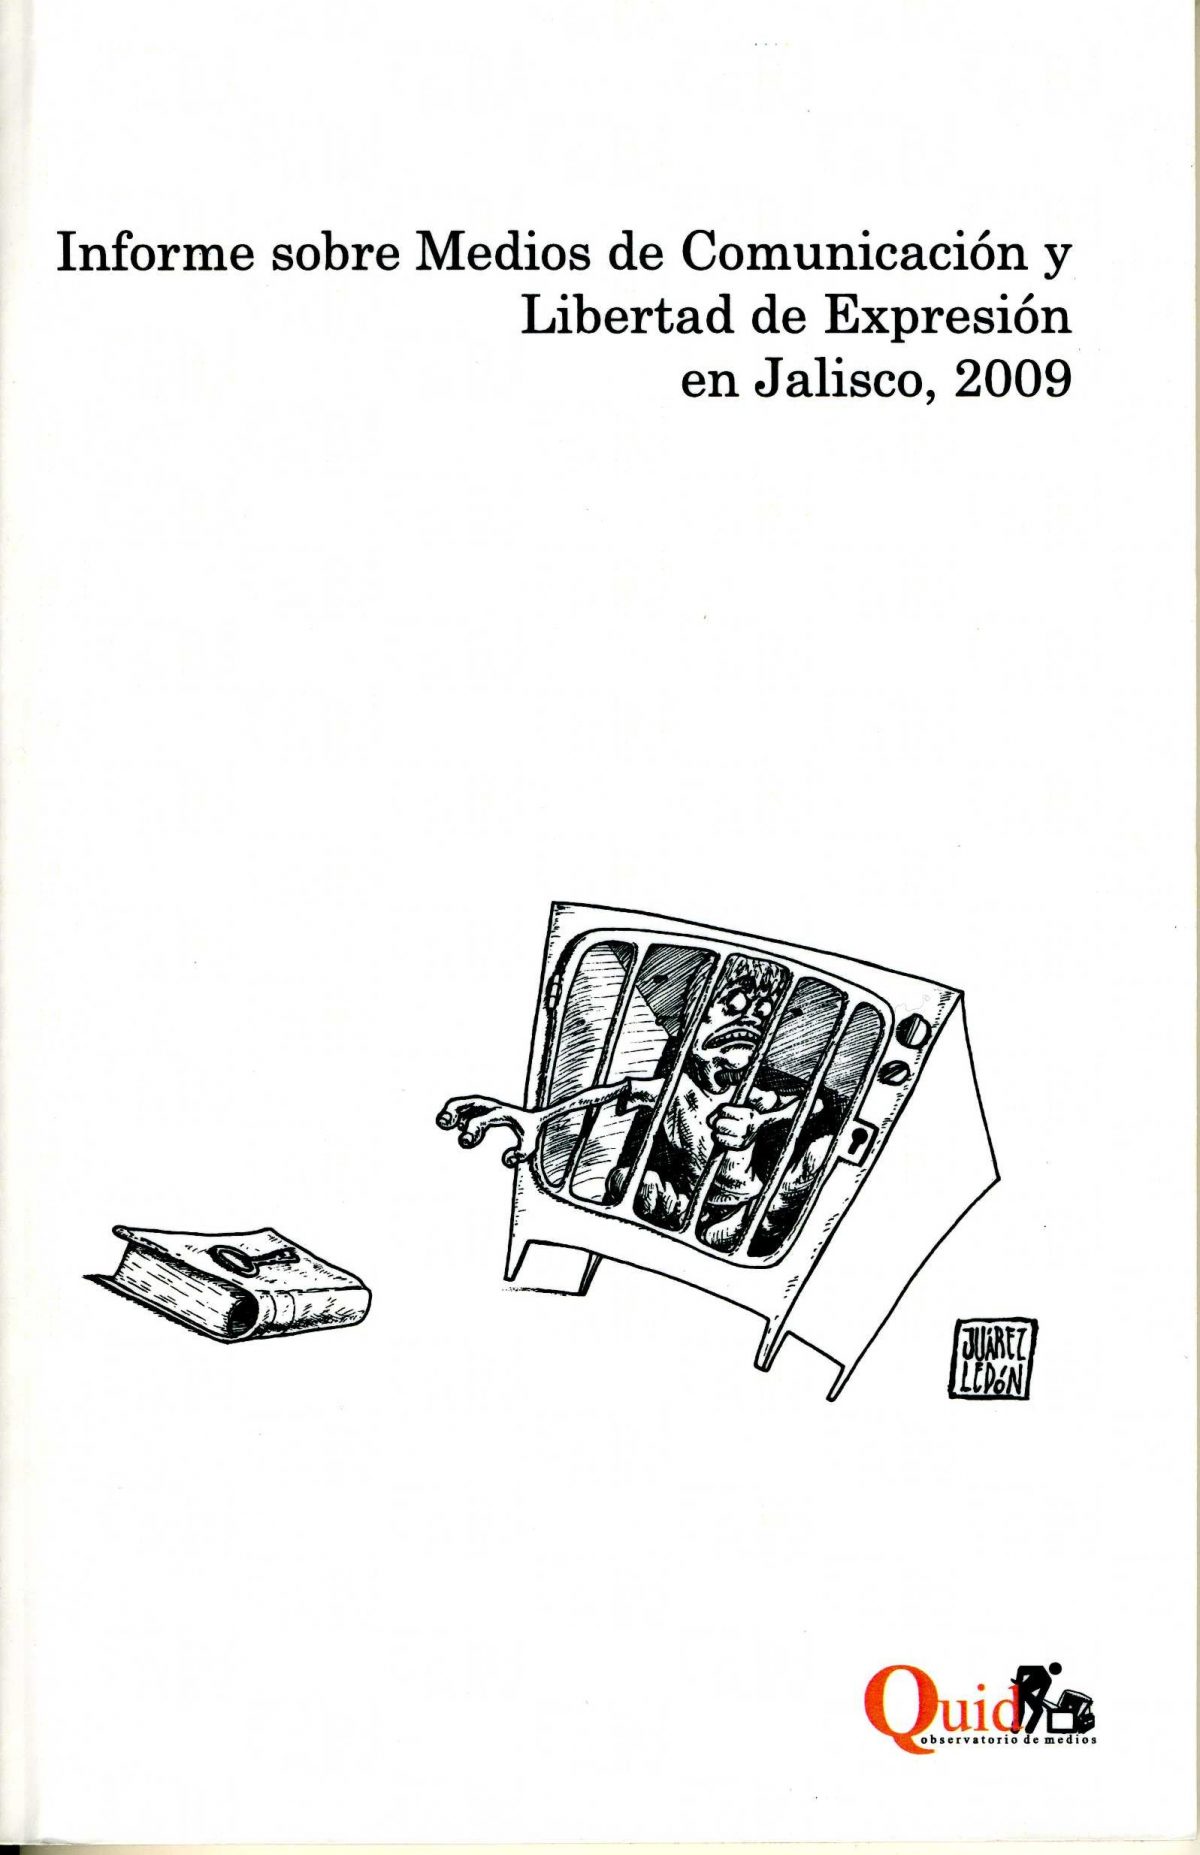 Medios de Comunicación y Derecho a la Información en Jalisco, 2009